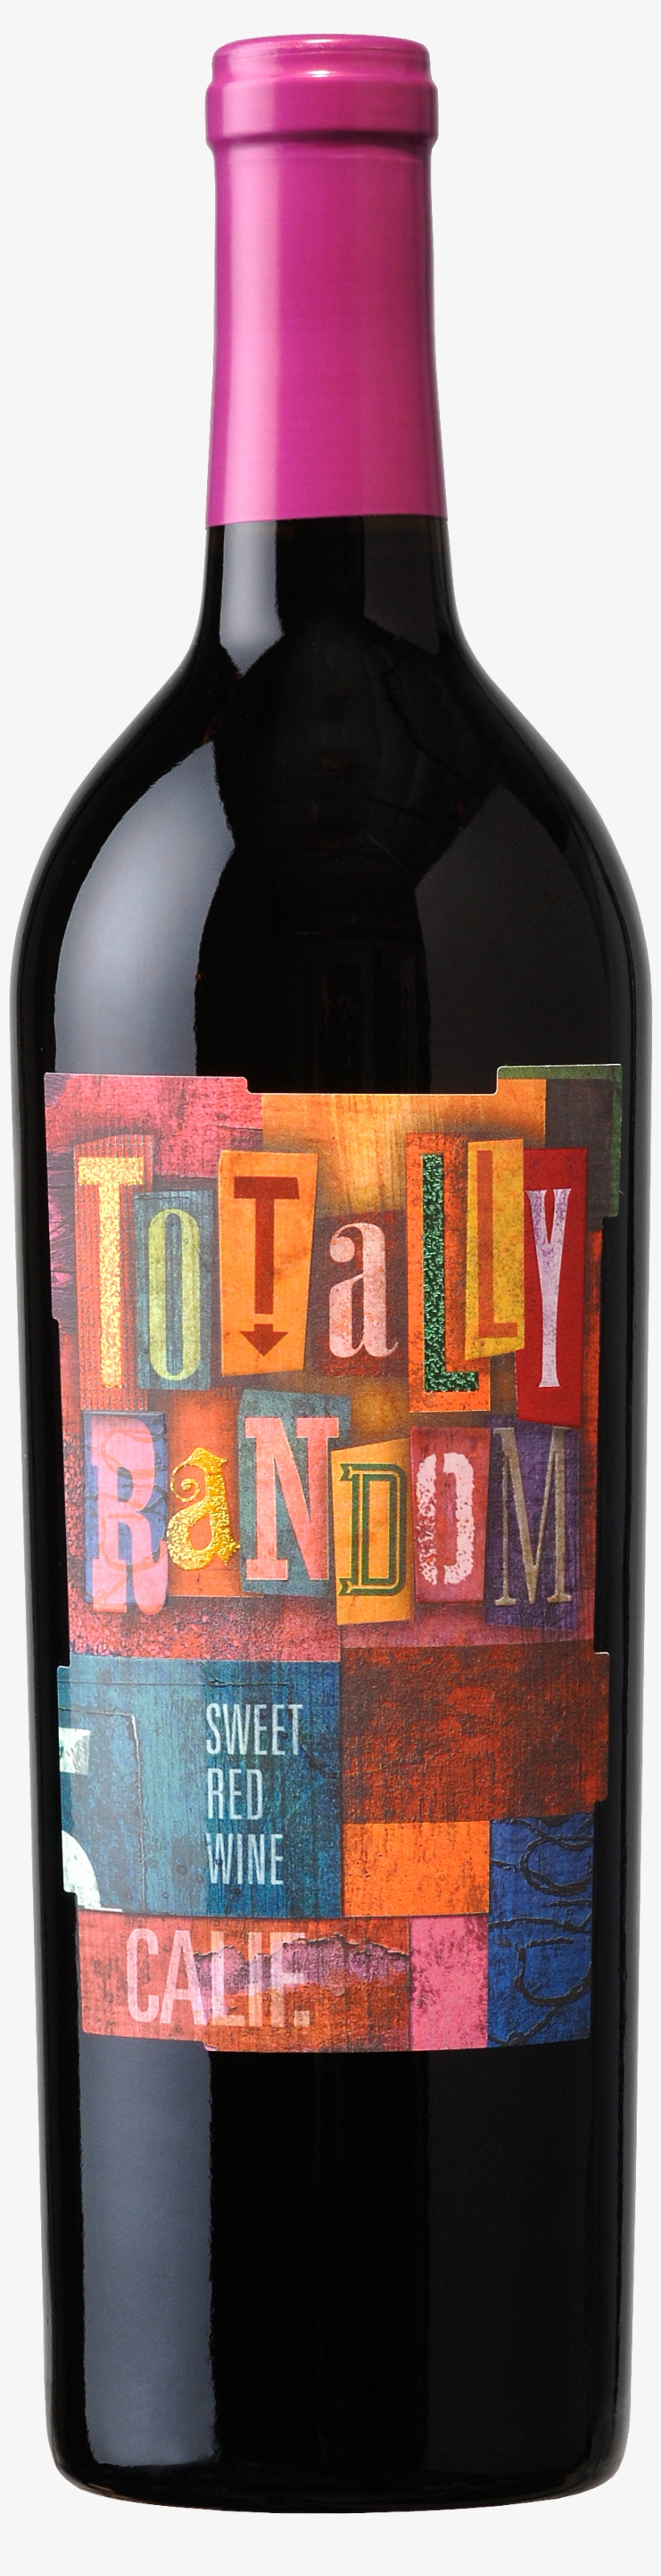 Alcohol Bottles Png - Random Wine, transparent png #1130751